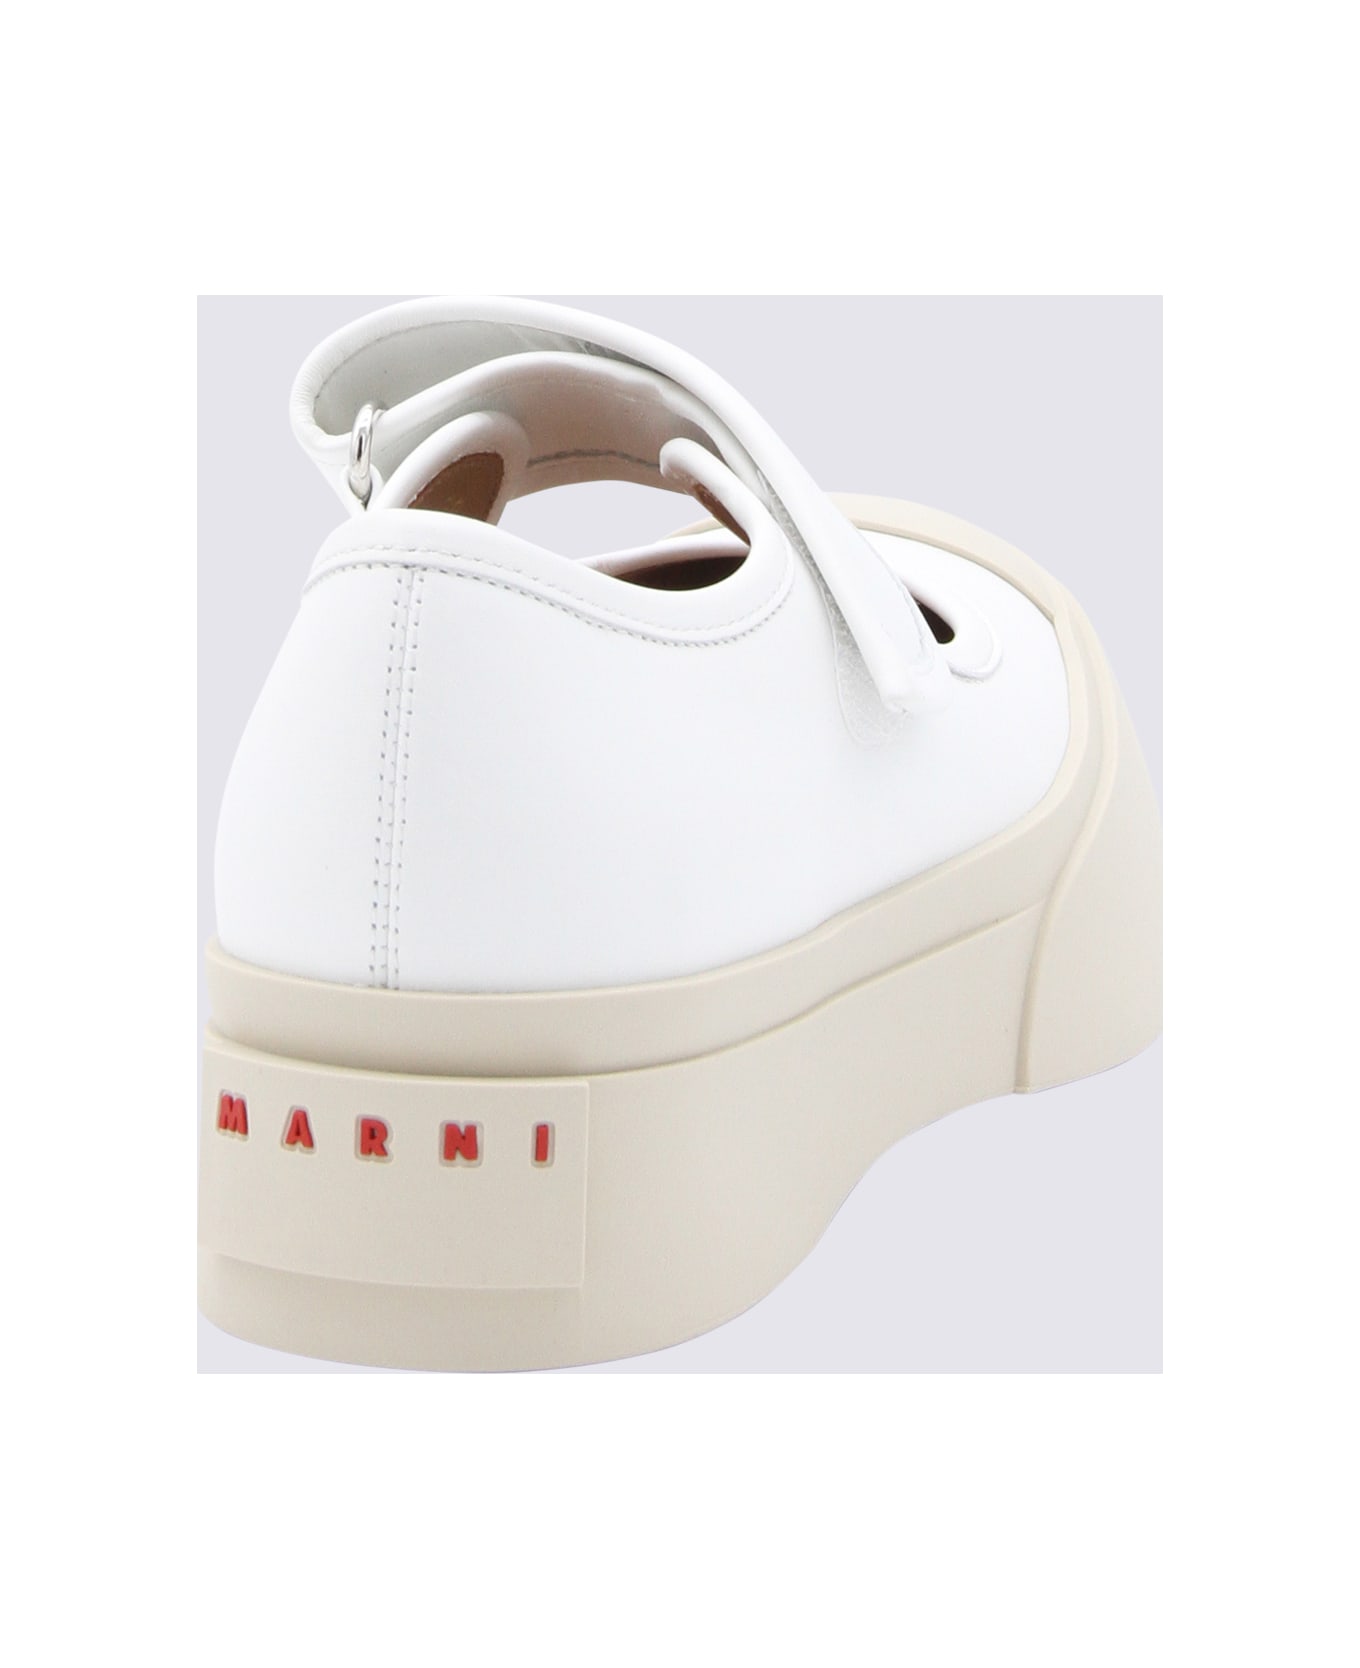 Marni White Leather Mary Jane Flats - White